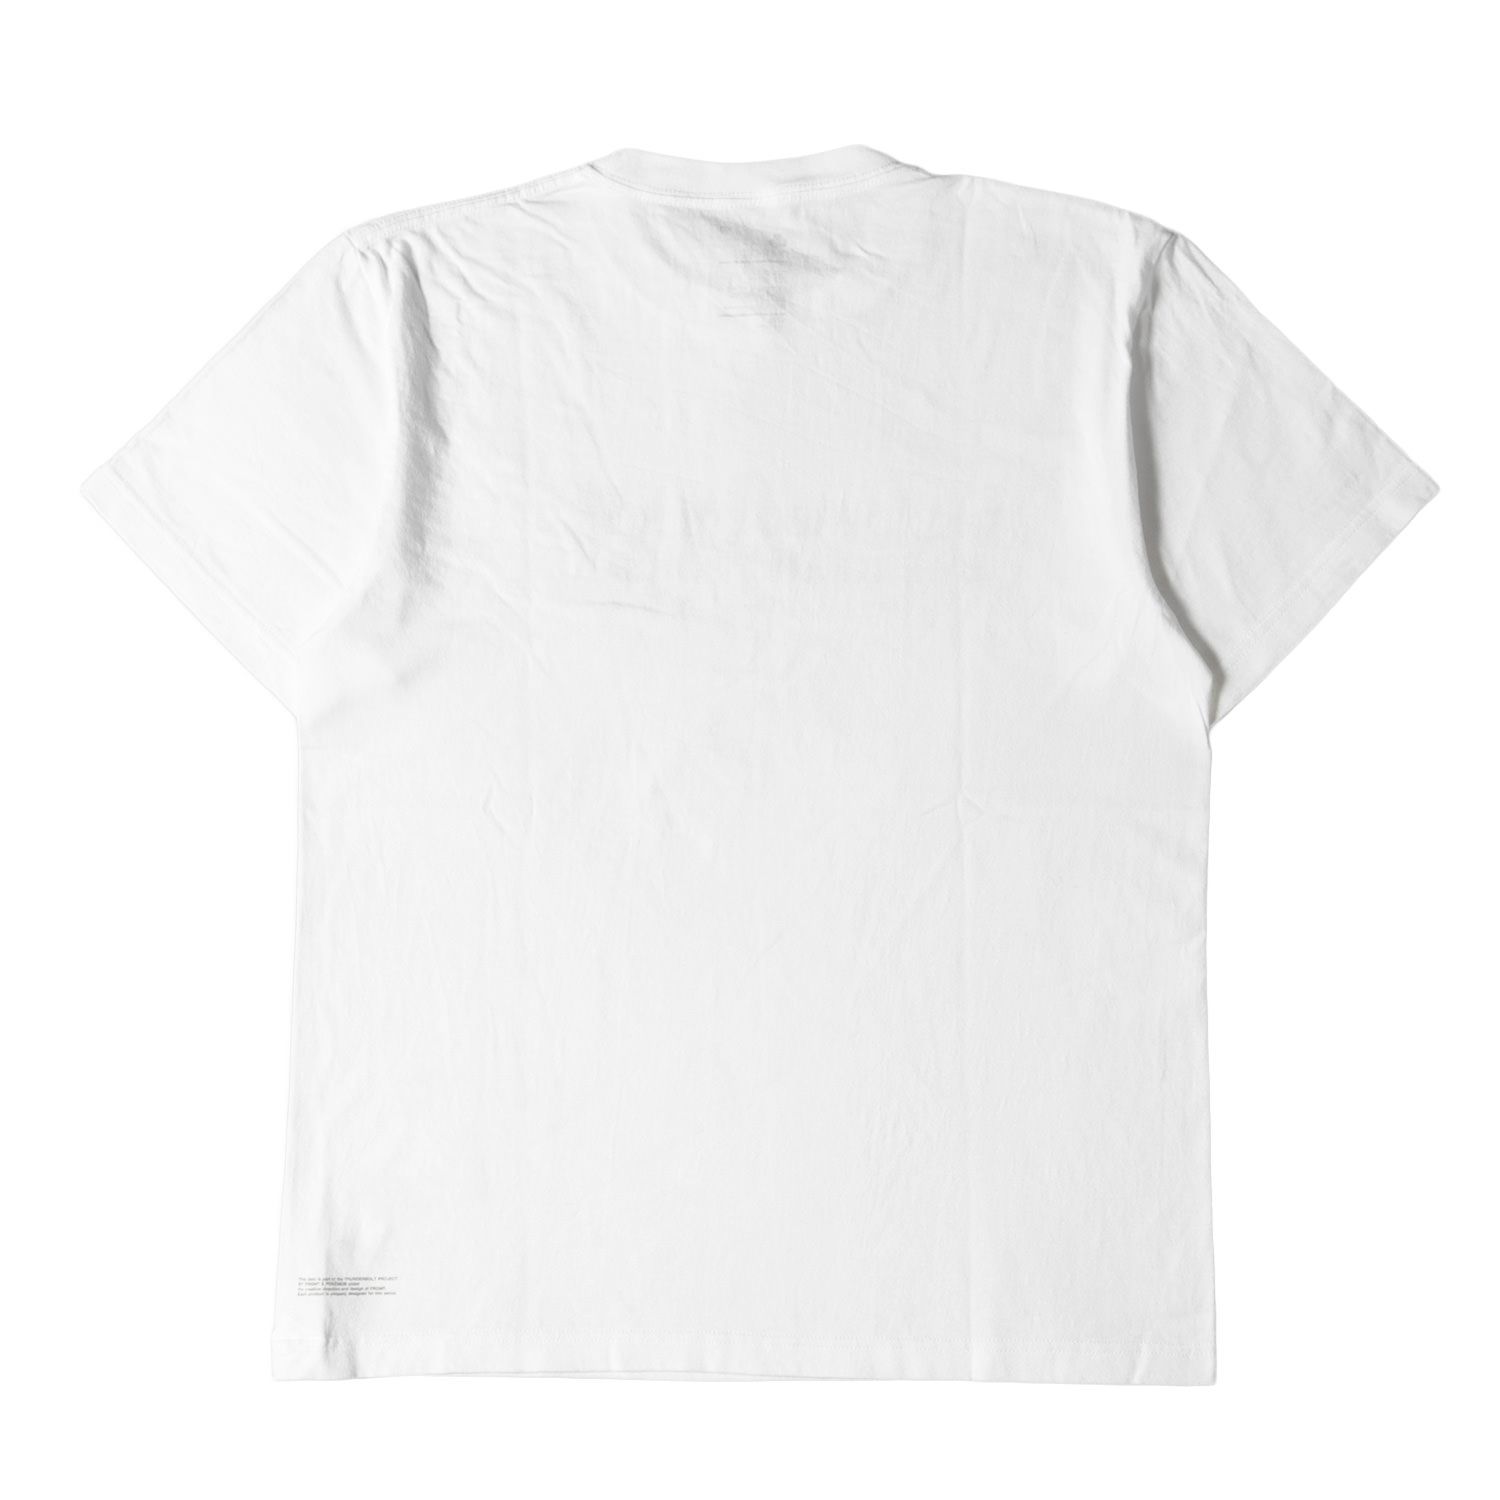 新品 THUNDERBOLT PROJECT Tシャツ ゼニガメ フラグメント